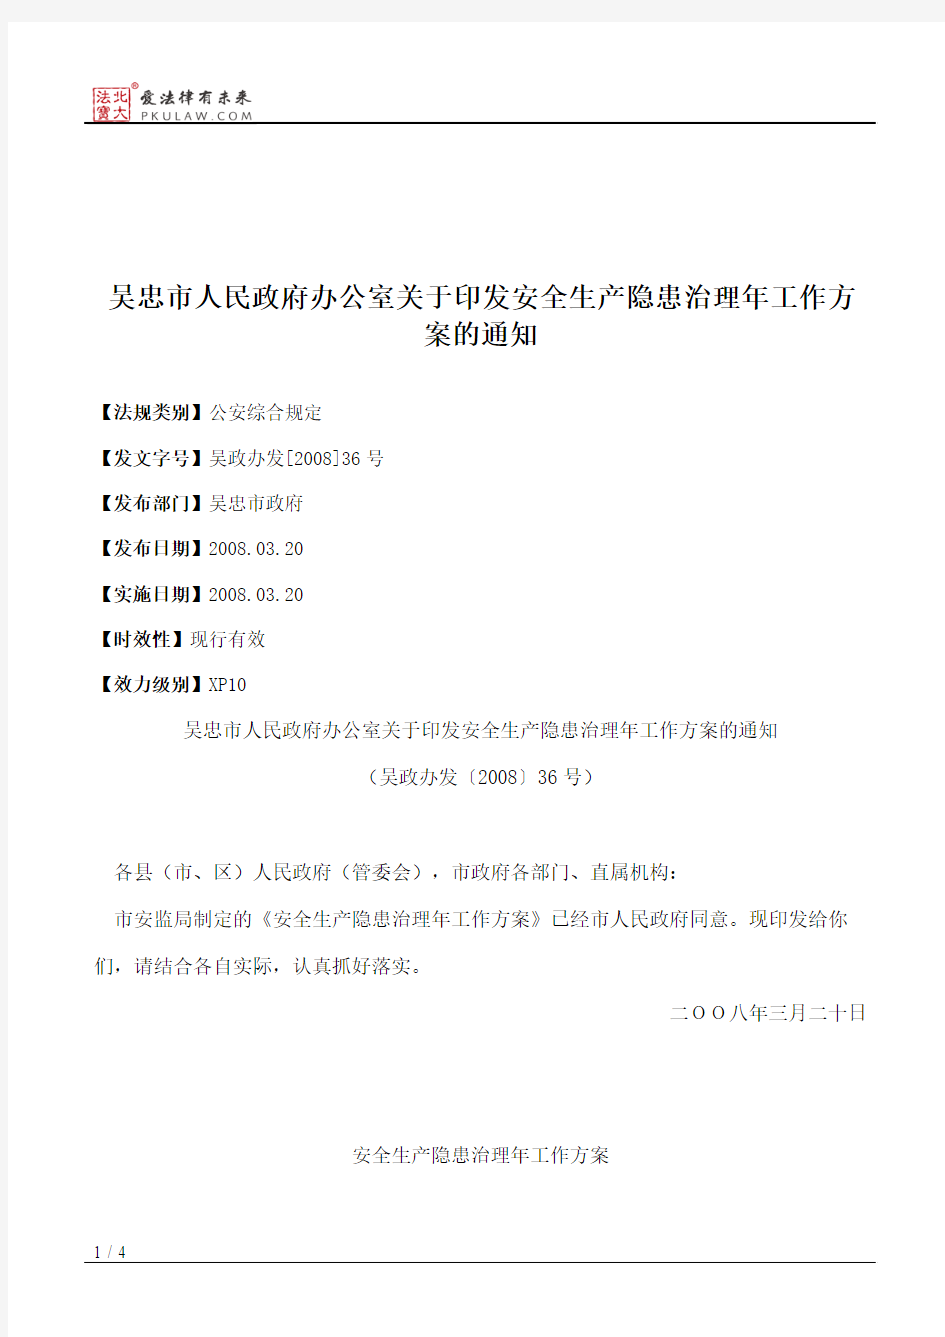 吴忠市人民政府办公室关于印发安全生产隐患治理年工作方案的通知